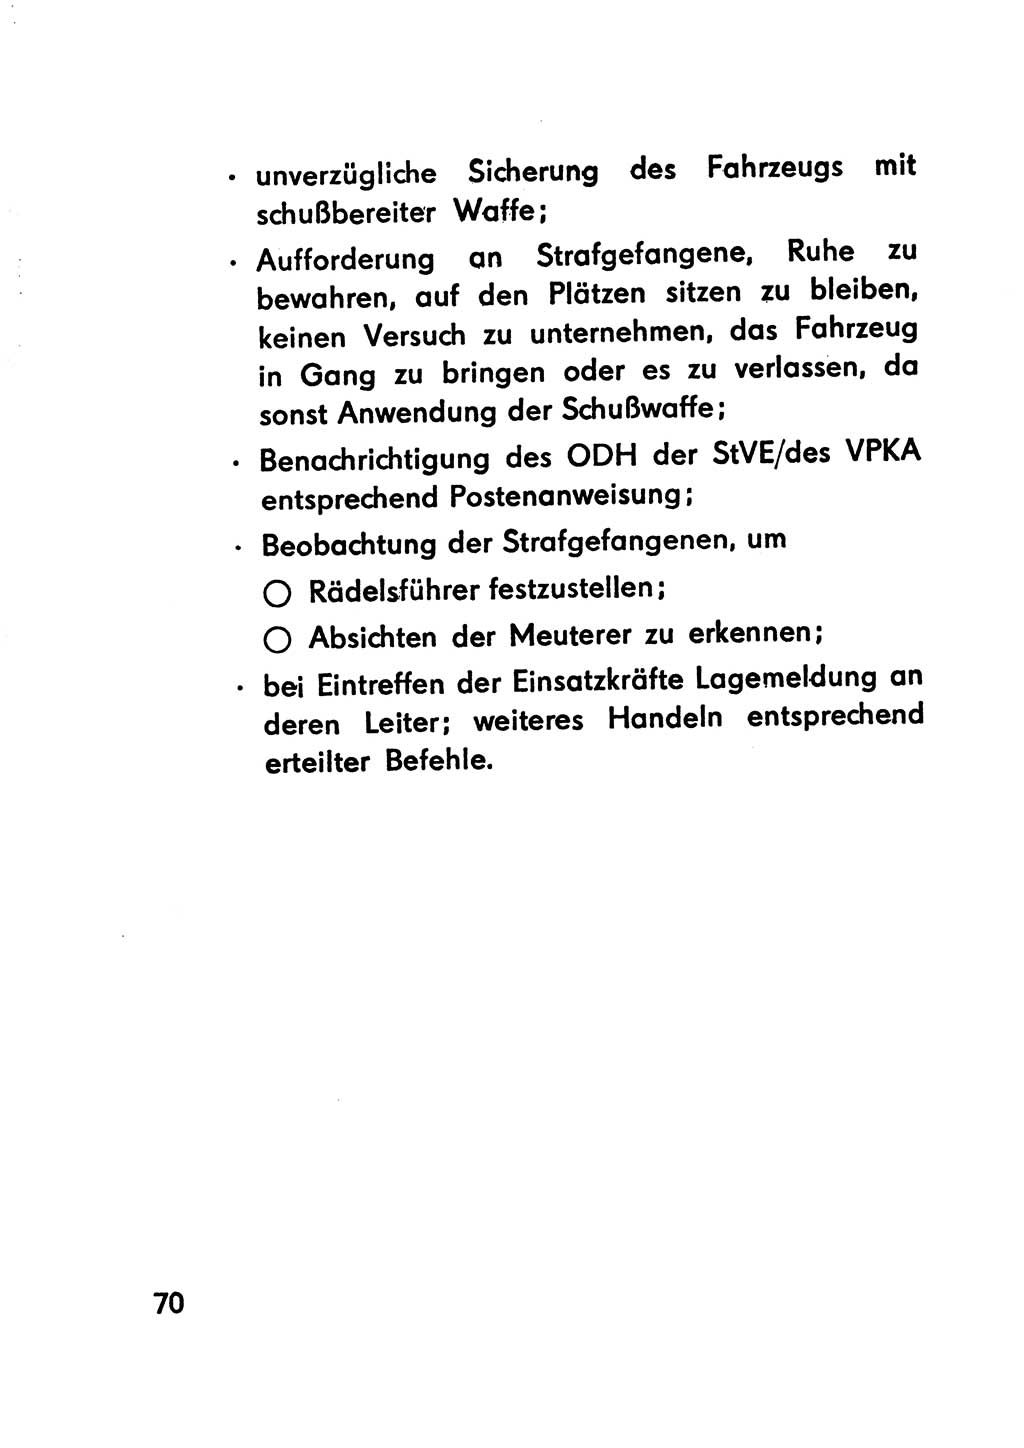 Merkbuch für SV-Angehörige [Strafvollzug (SV) Deutsche Demokratische Republik (DDR)] 1975, Seite 70 (SV-Angeh. DDR 1975, S. 70)